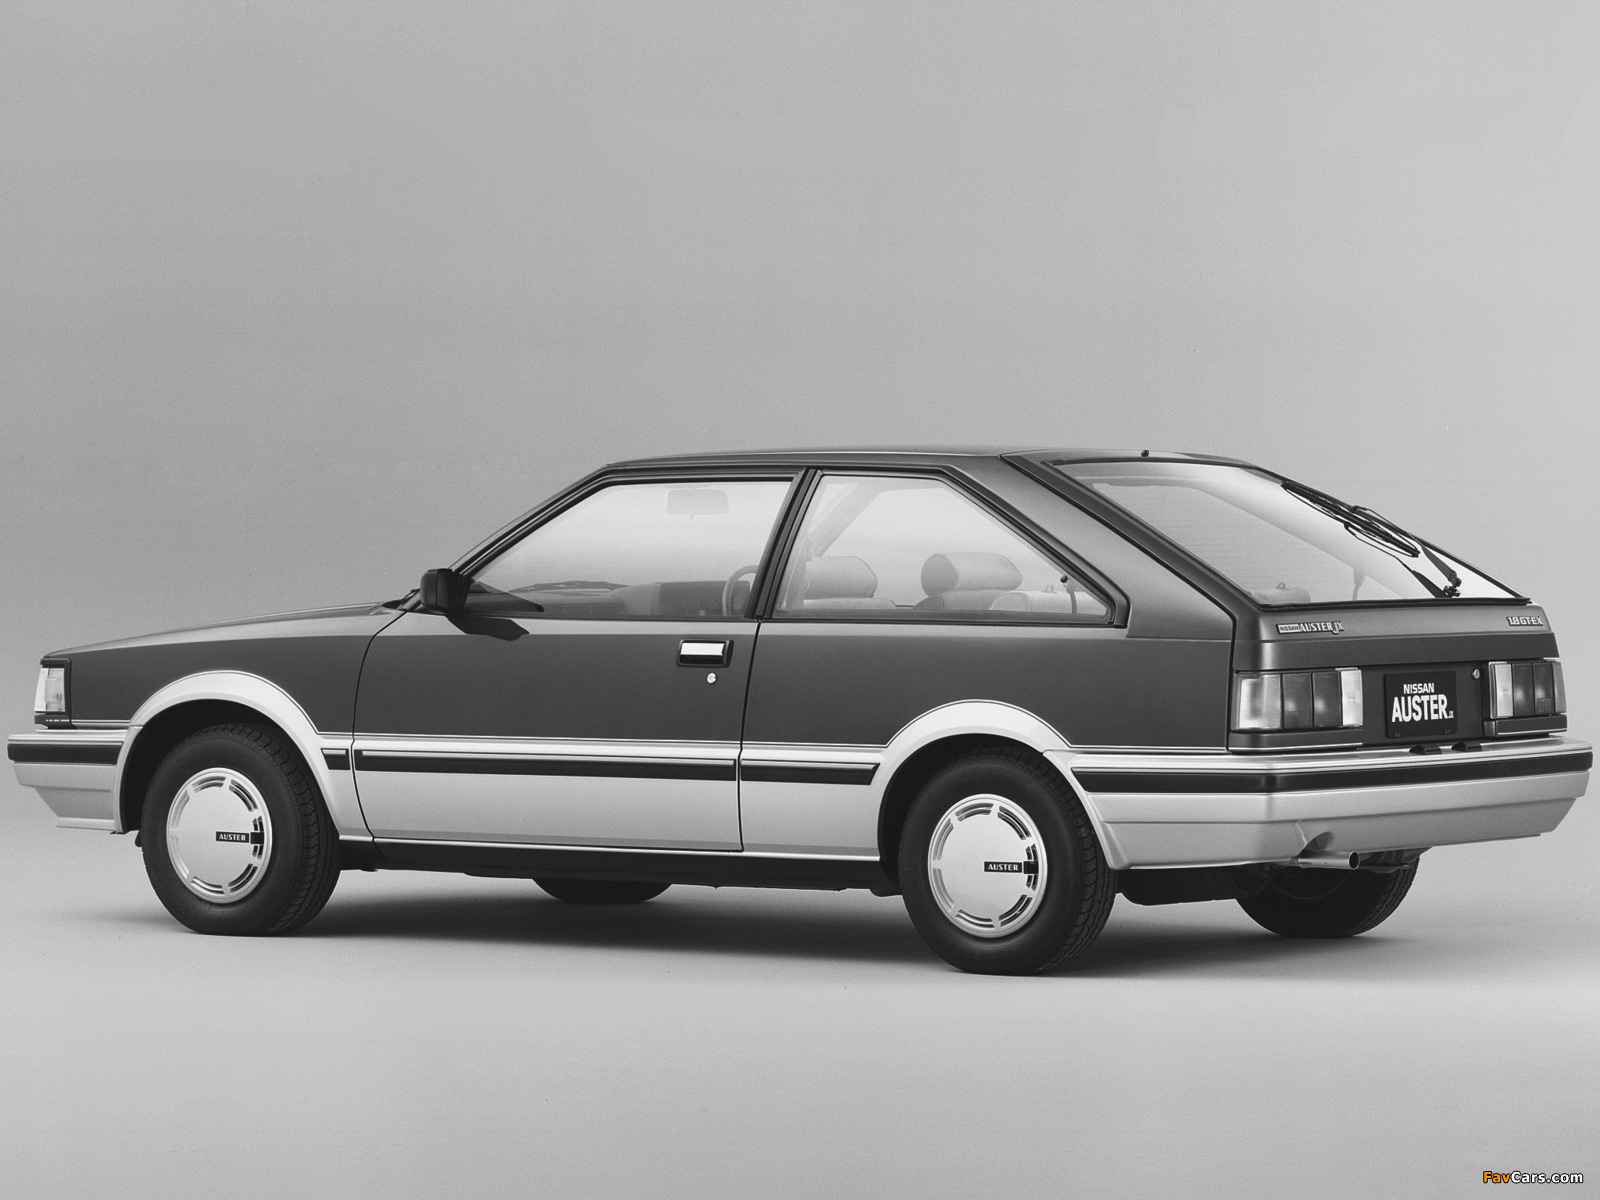 Nissan Auster JX Hatchback 1800 GT-EX (T11) 1983–85 images (1600 x 1200)